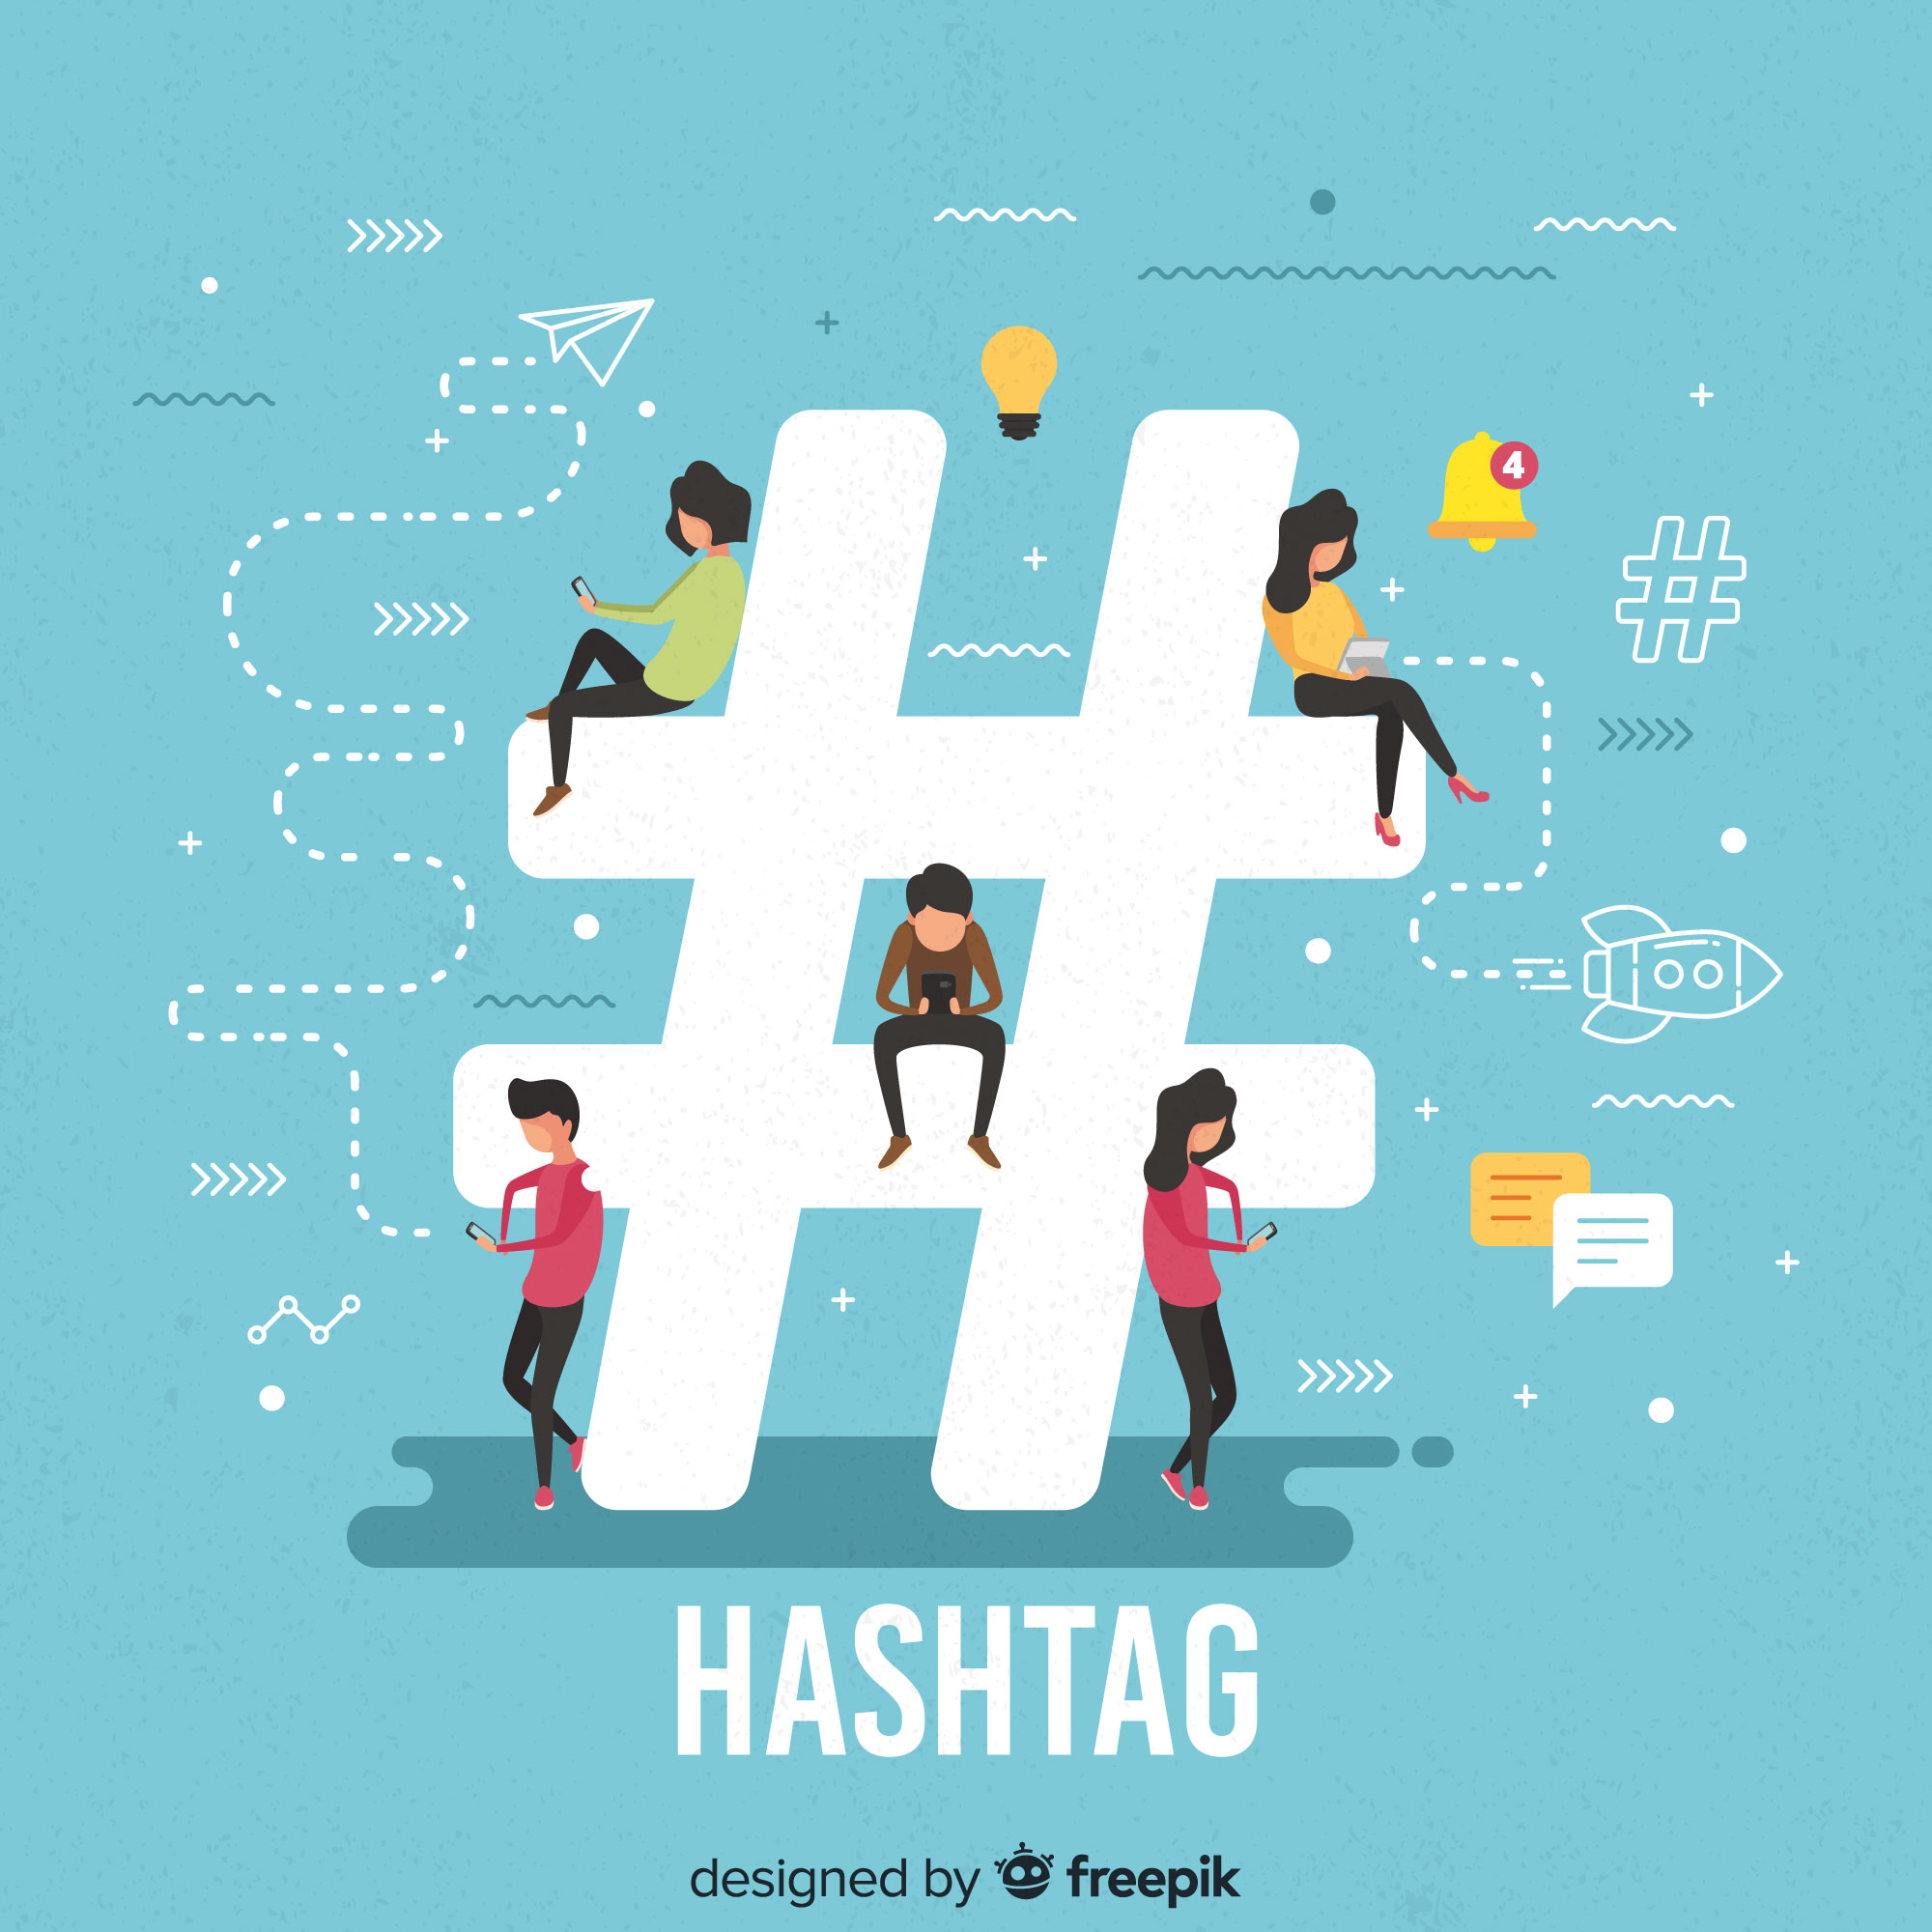 ¿Qué es un Hashtag?